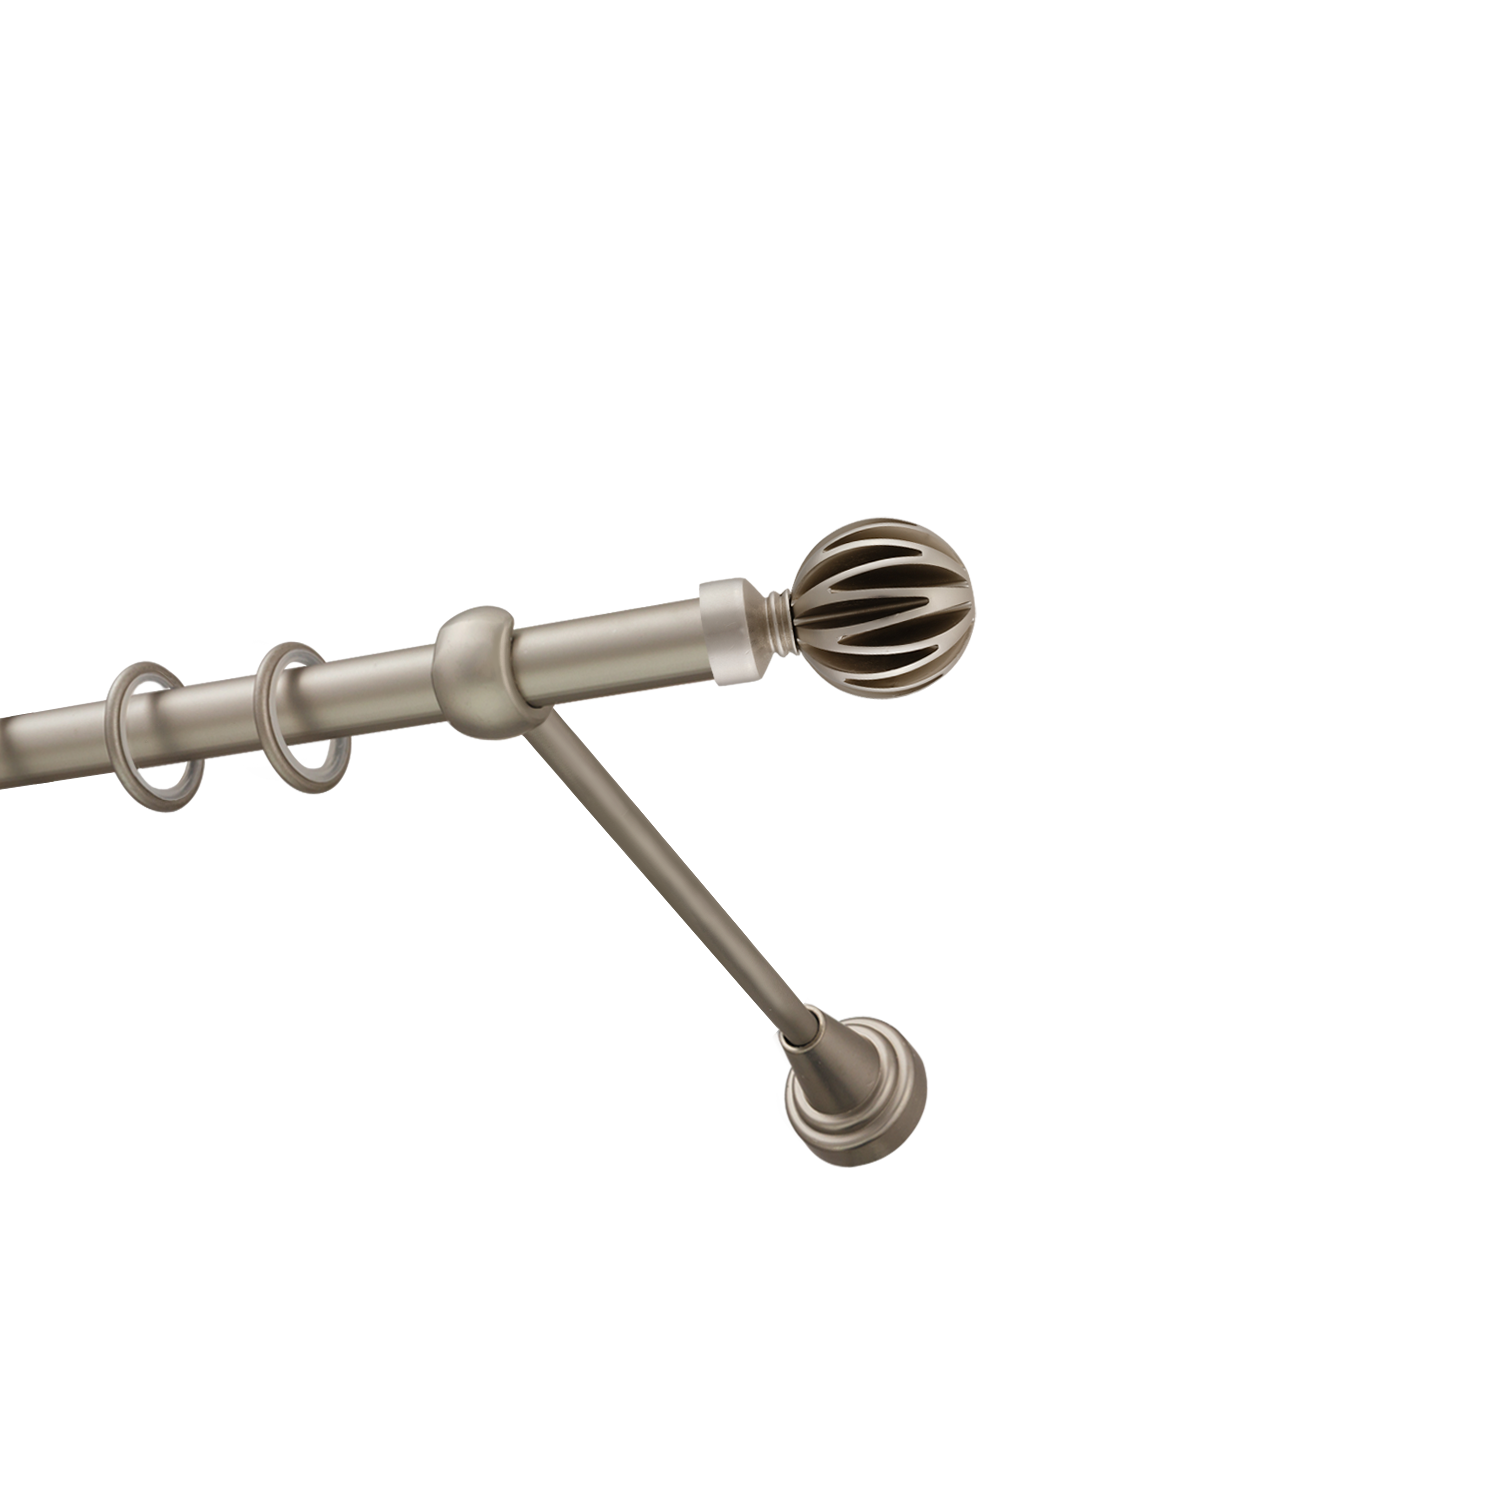 Металлический карниз для штор Шафран, однорядный 16 мм, сталь, гладкая штанга, длина 240 см - фото Wikidecor.ru